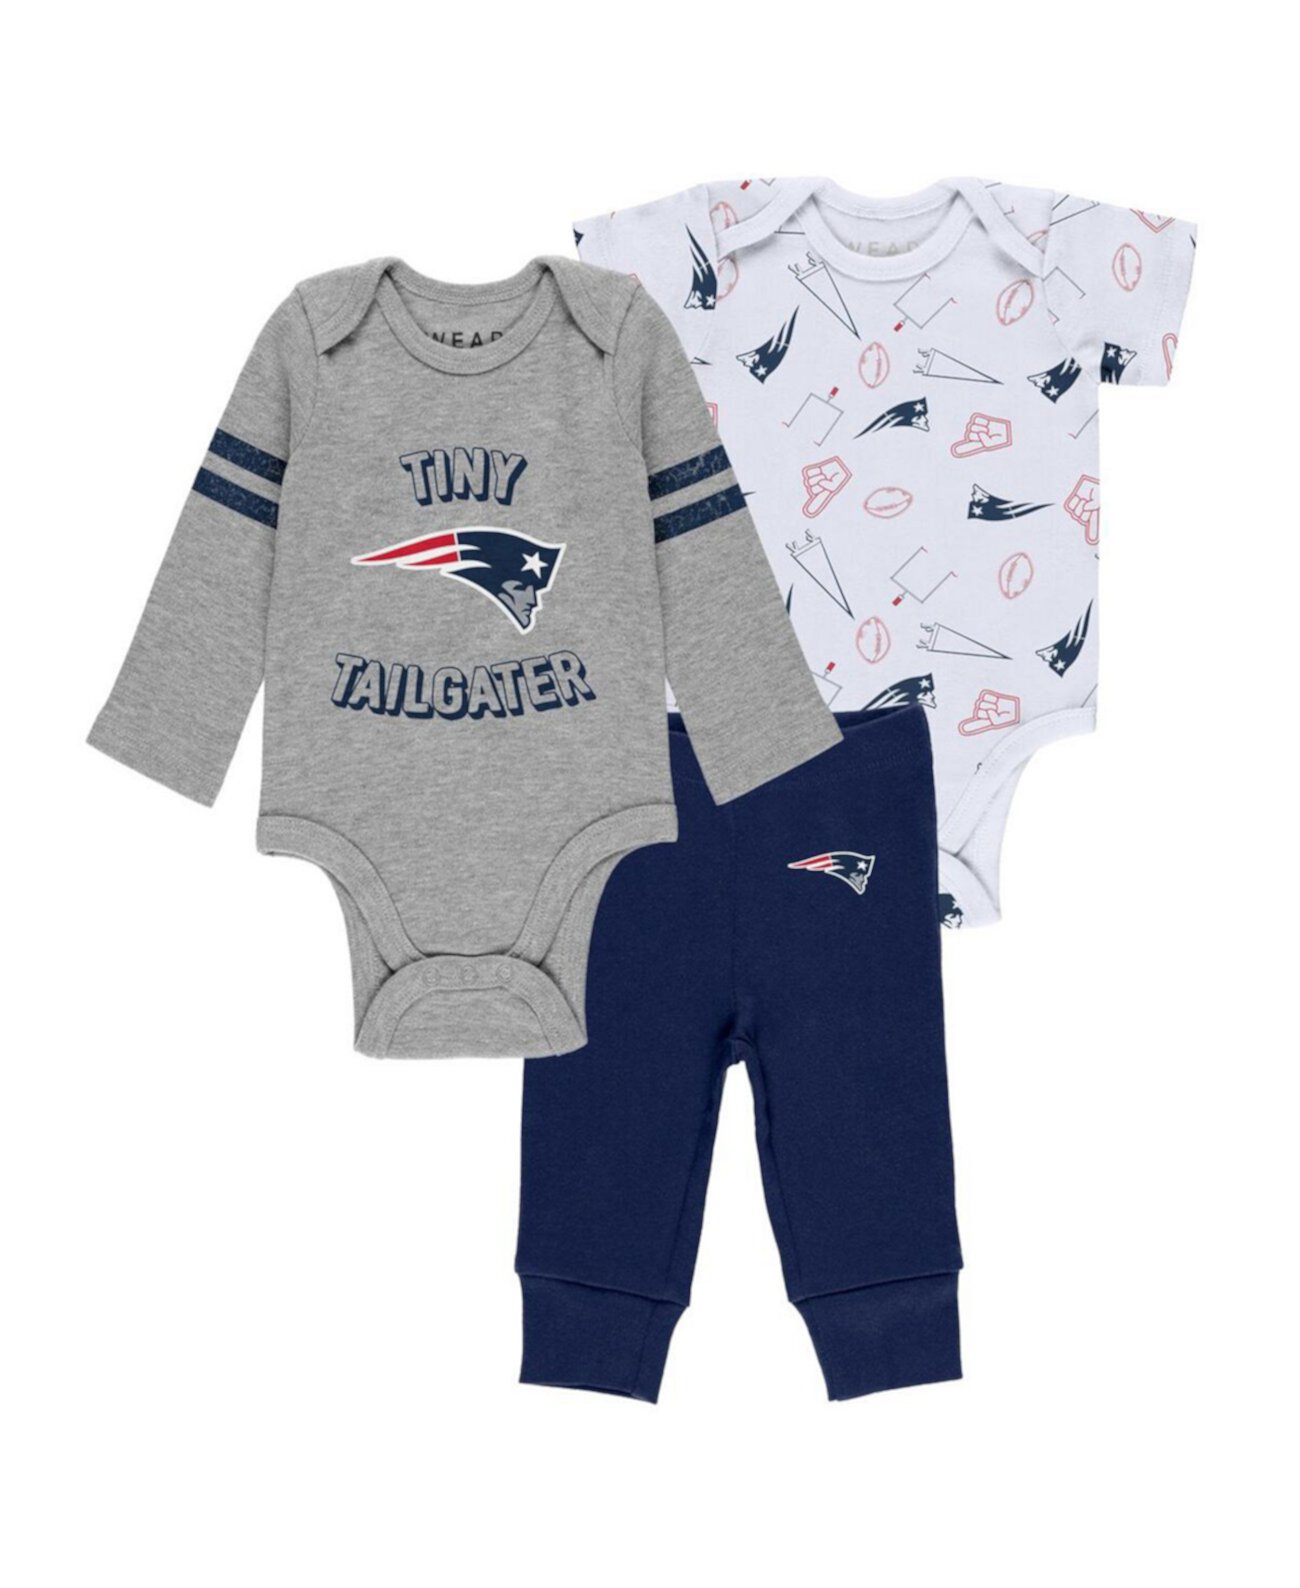 Комплект из трех частей боди и брюк New England Patriots для новорожденных и младенцев, мальчиков и девочек, серого, темно-синего и белого цвета WEAR by Erin Andrews